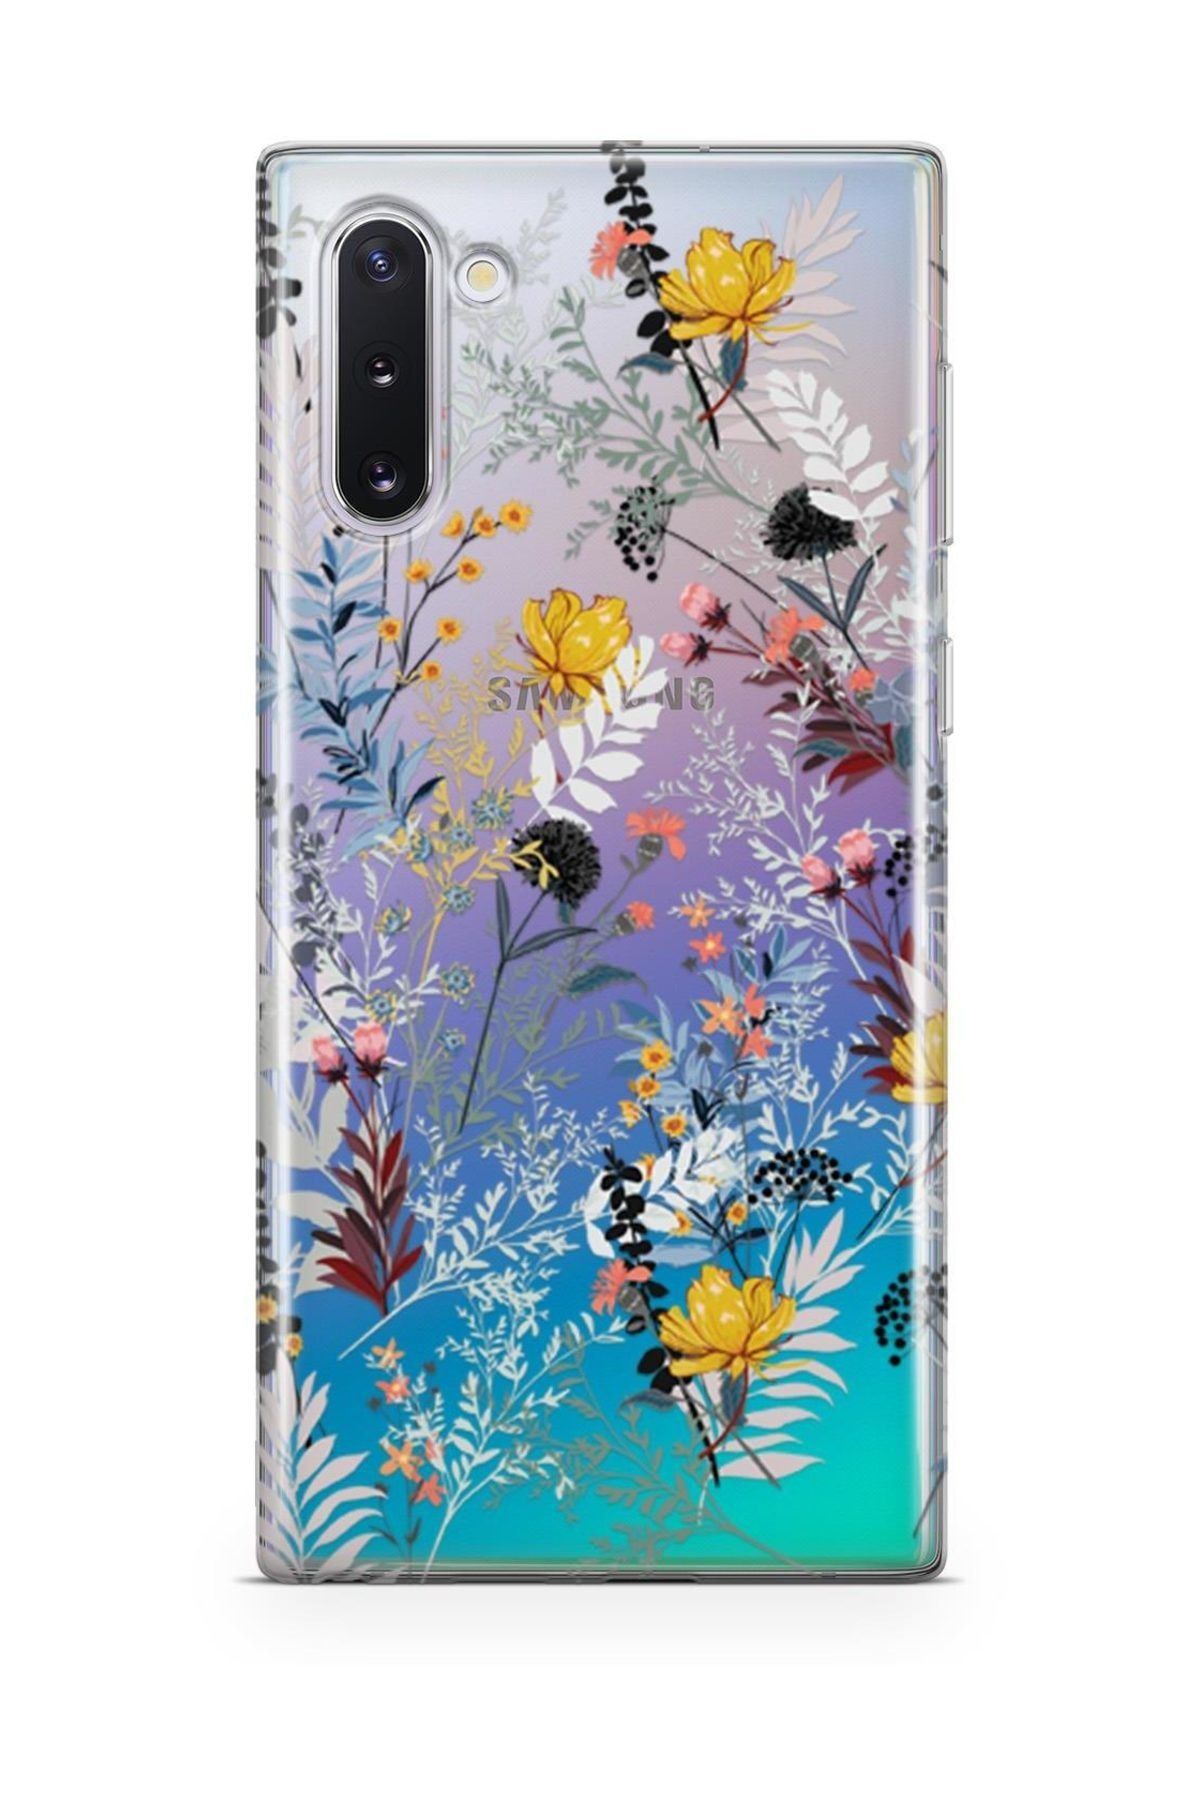 Lopard Galaxy Note 10 Kılıf Silikon Arka Koruma Kapak Bahar Çiçekleri Desenli